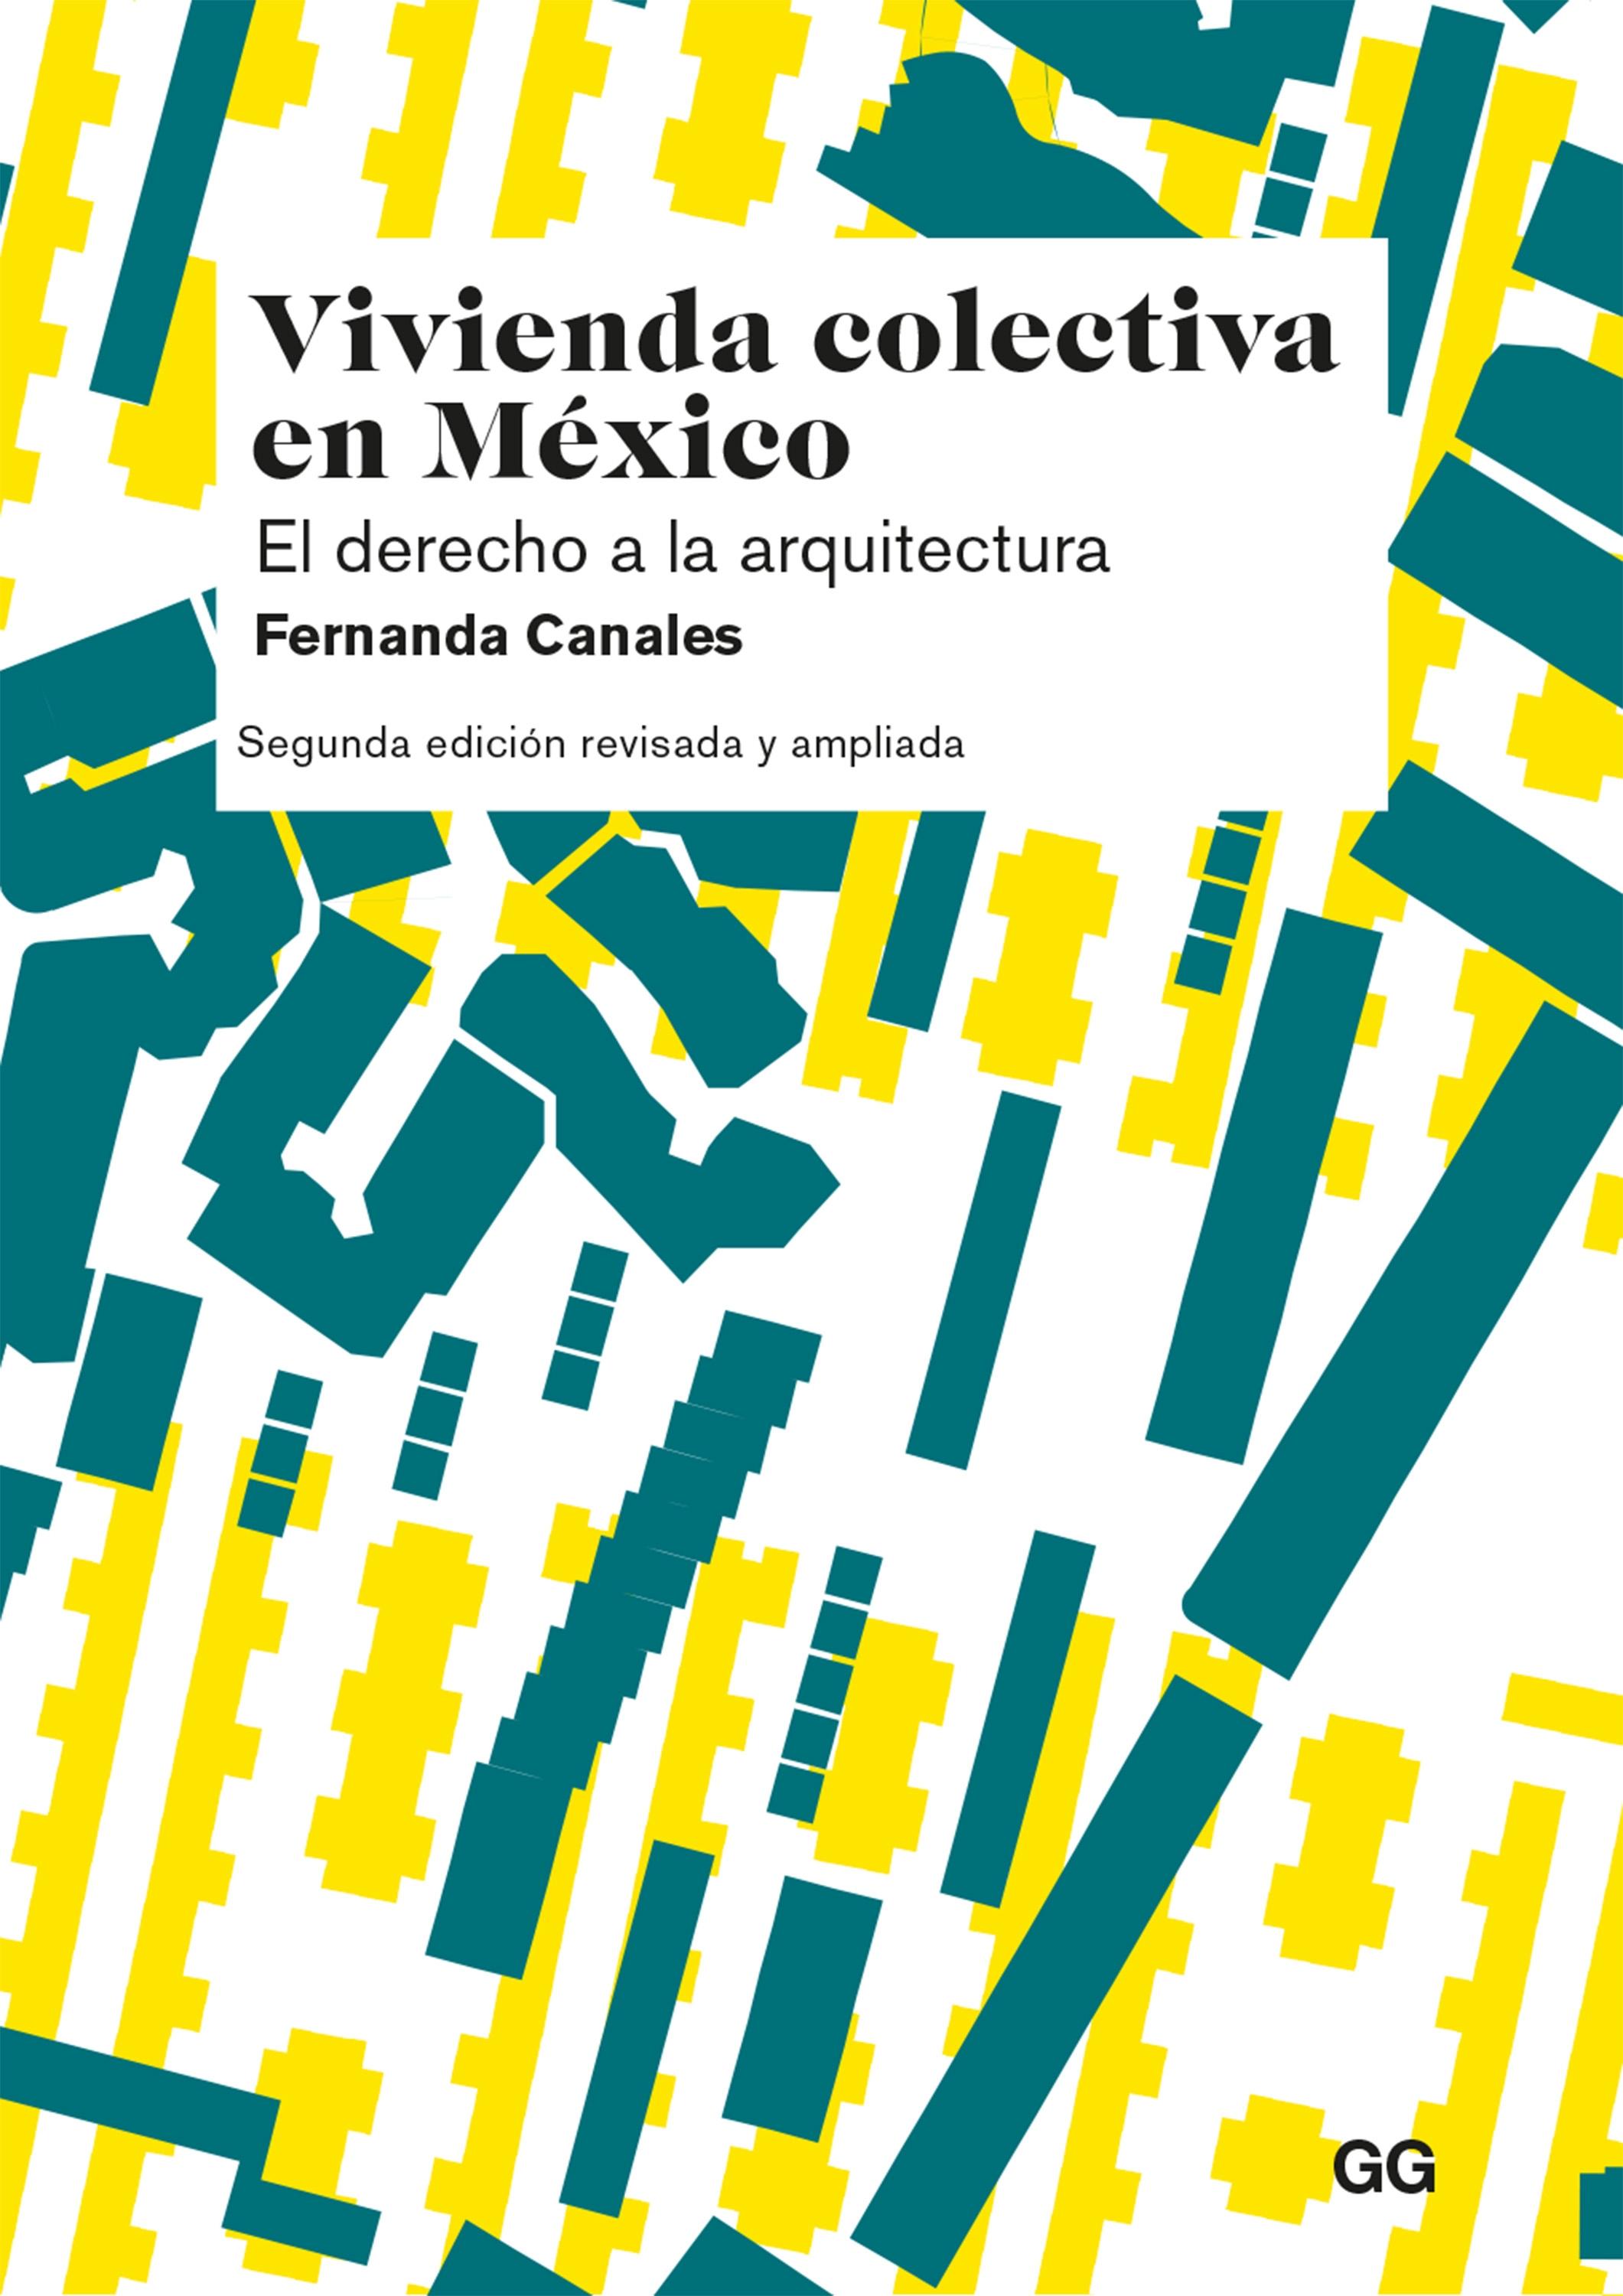 Vivienda colectiva en México "El derecho a la arquitectura"